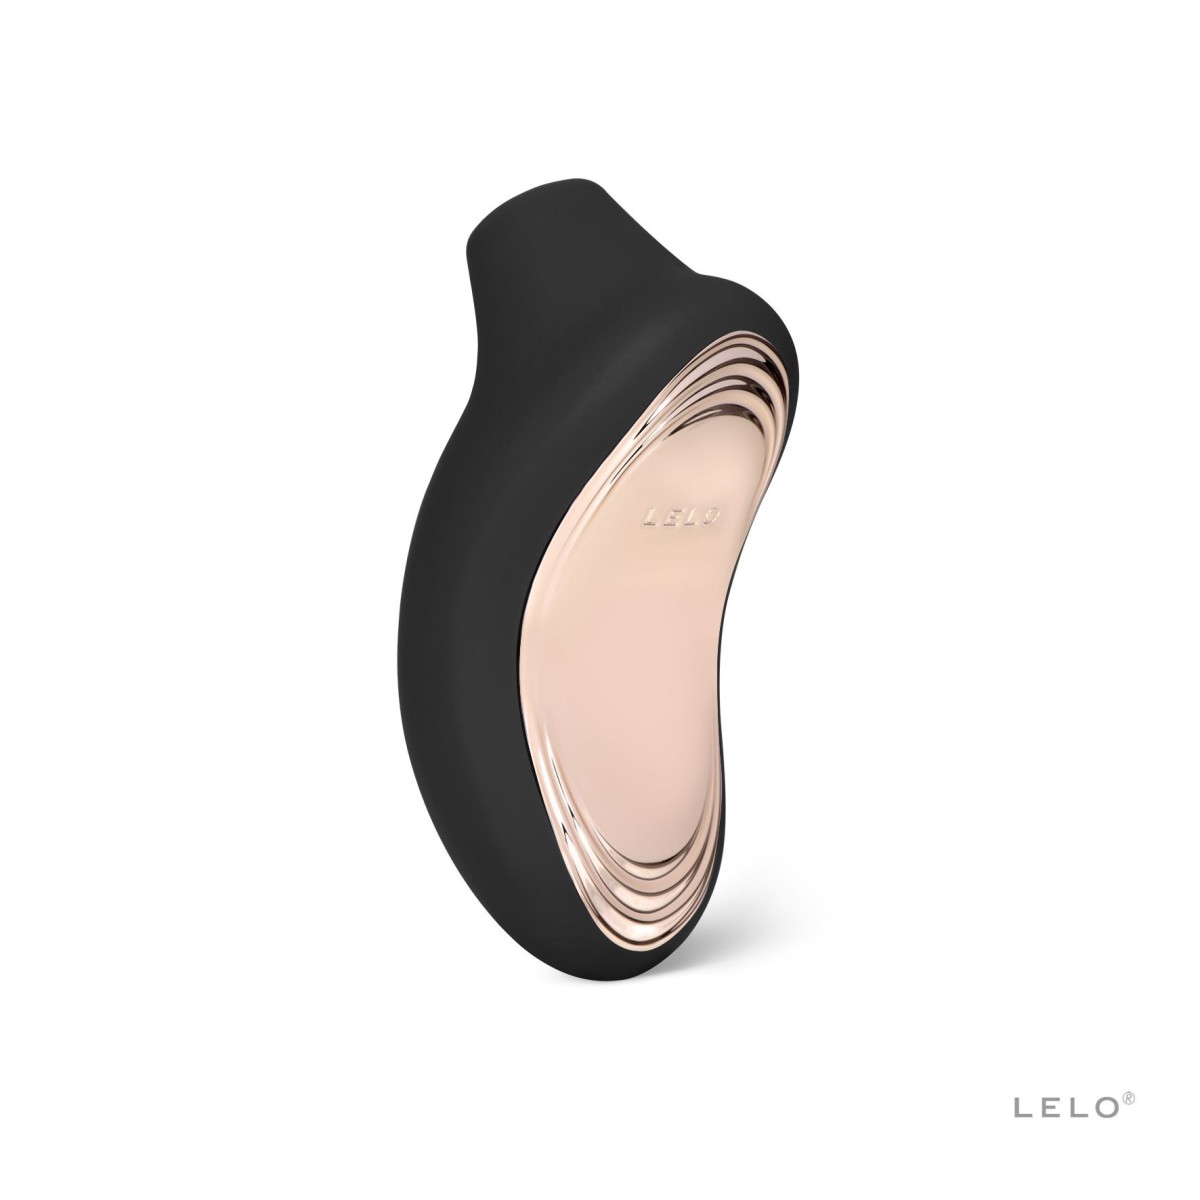 Stimulátor klitorisu LELO Sona 2 Cruise Black, luxusní sonický stimulátor klitorisu